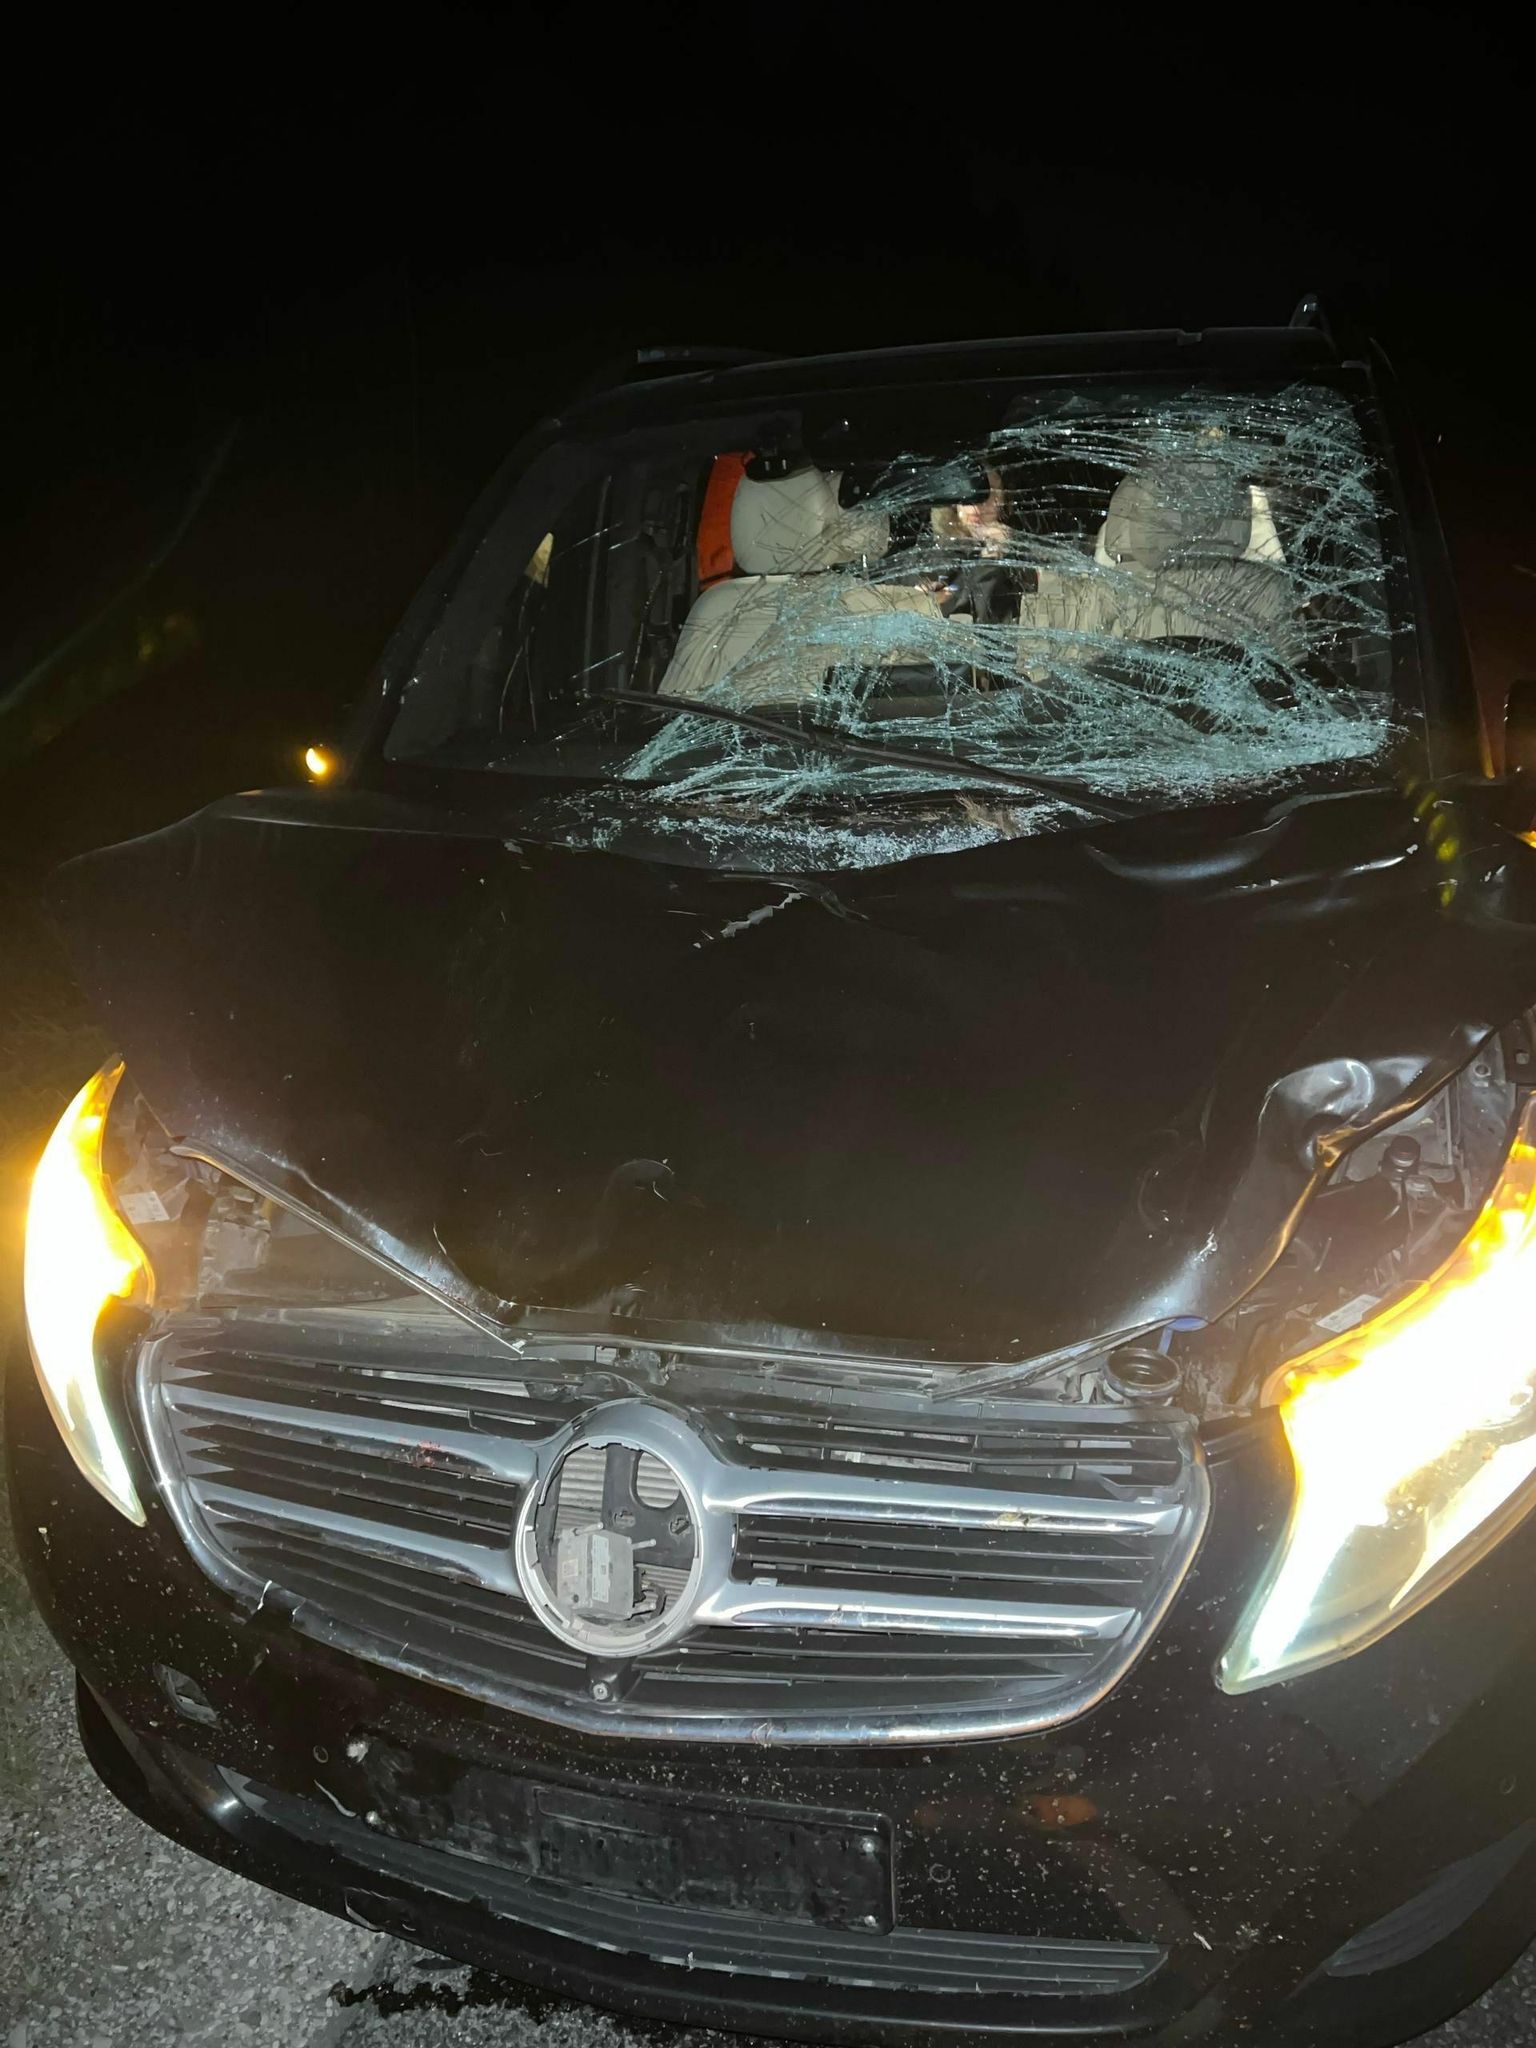 Loom lendas sõiduki Mercedes-Benz Vito esiklaasi. Auto sai kannatada, kütust lekkis teele, ent abiväge perele ei saadetud. 